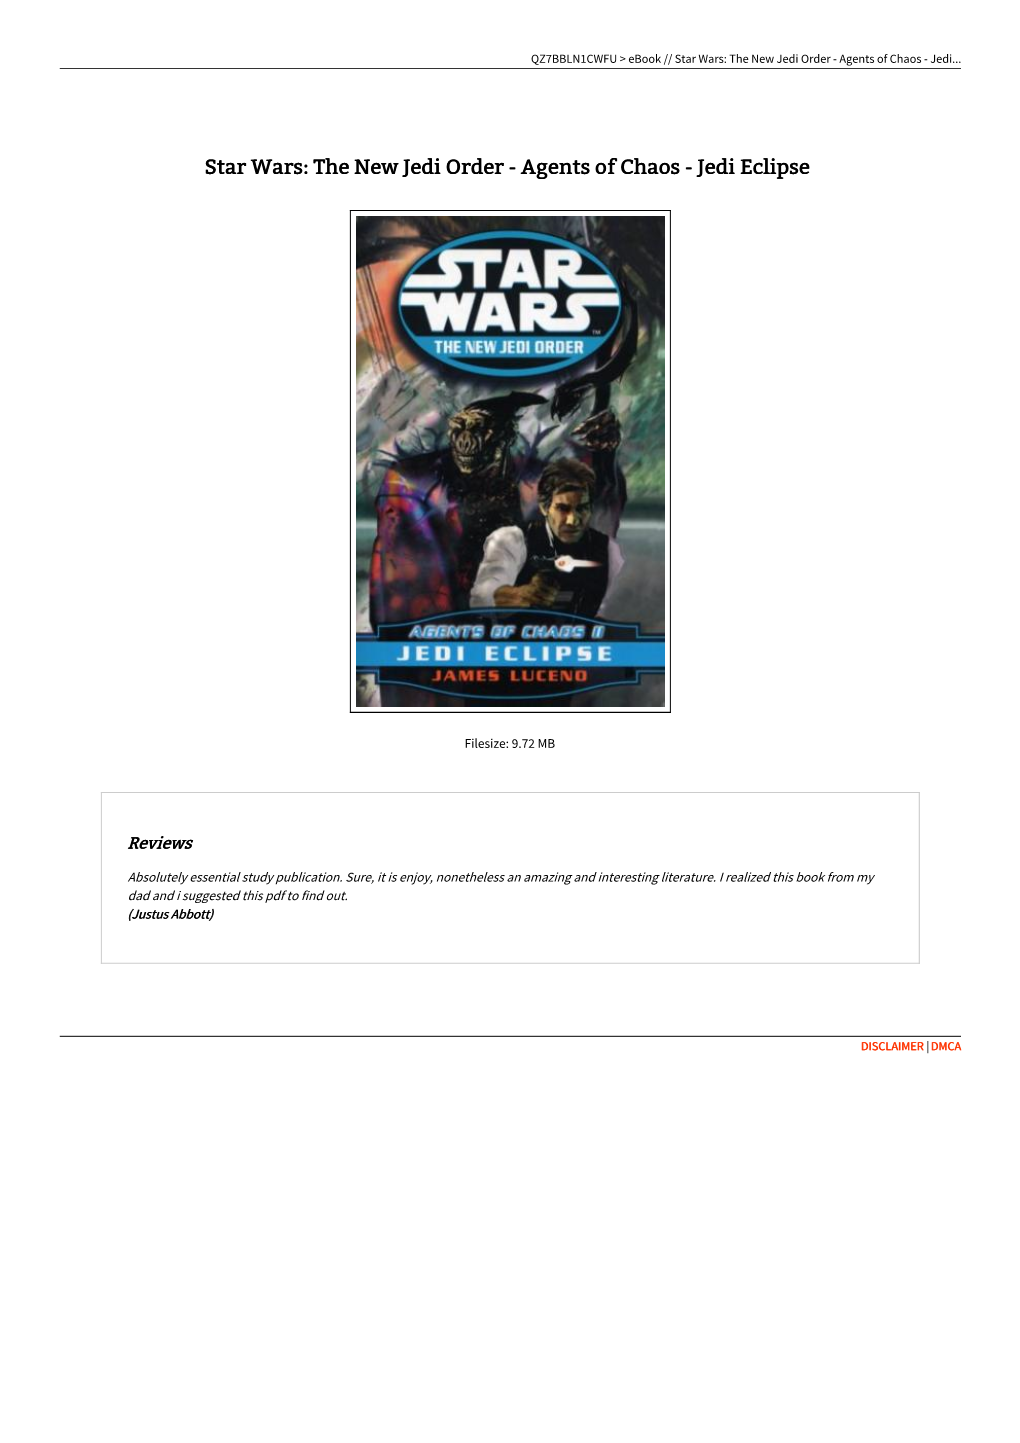 Read Ebook ^ Star Wars: the New Jedi Order